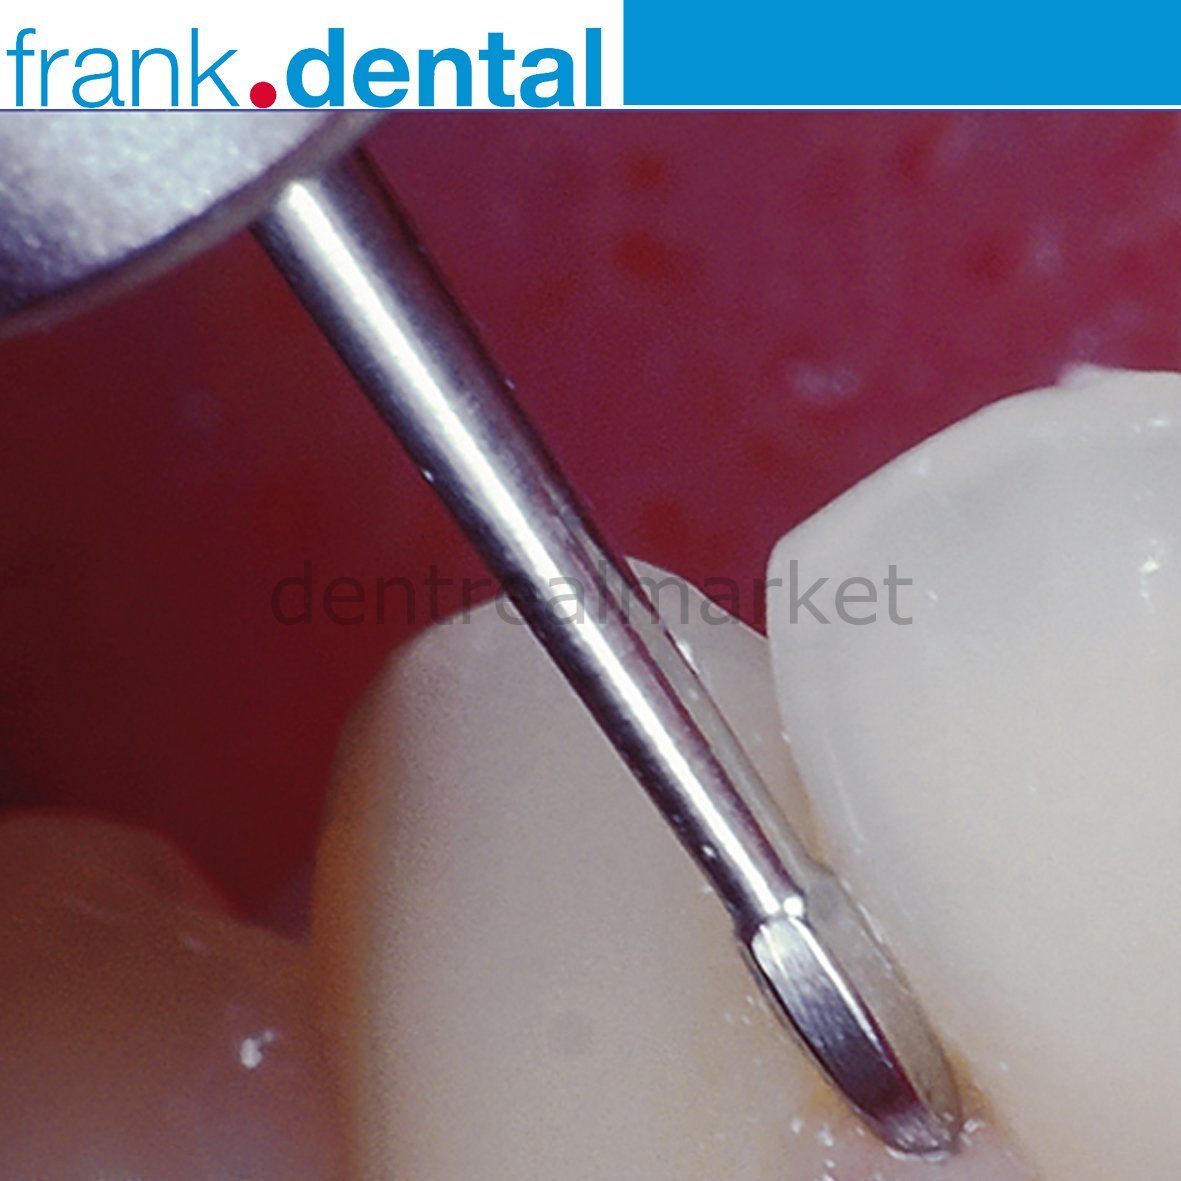 DentrealStore - Frank Dental Perio Bur 758